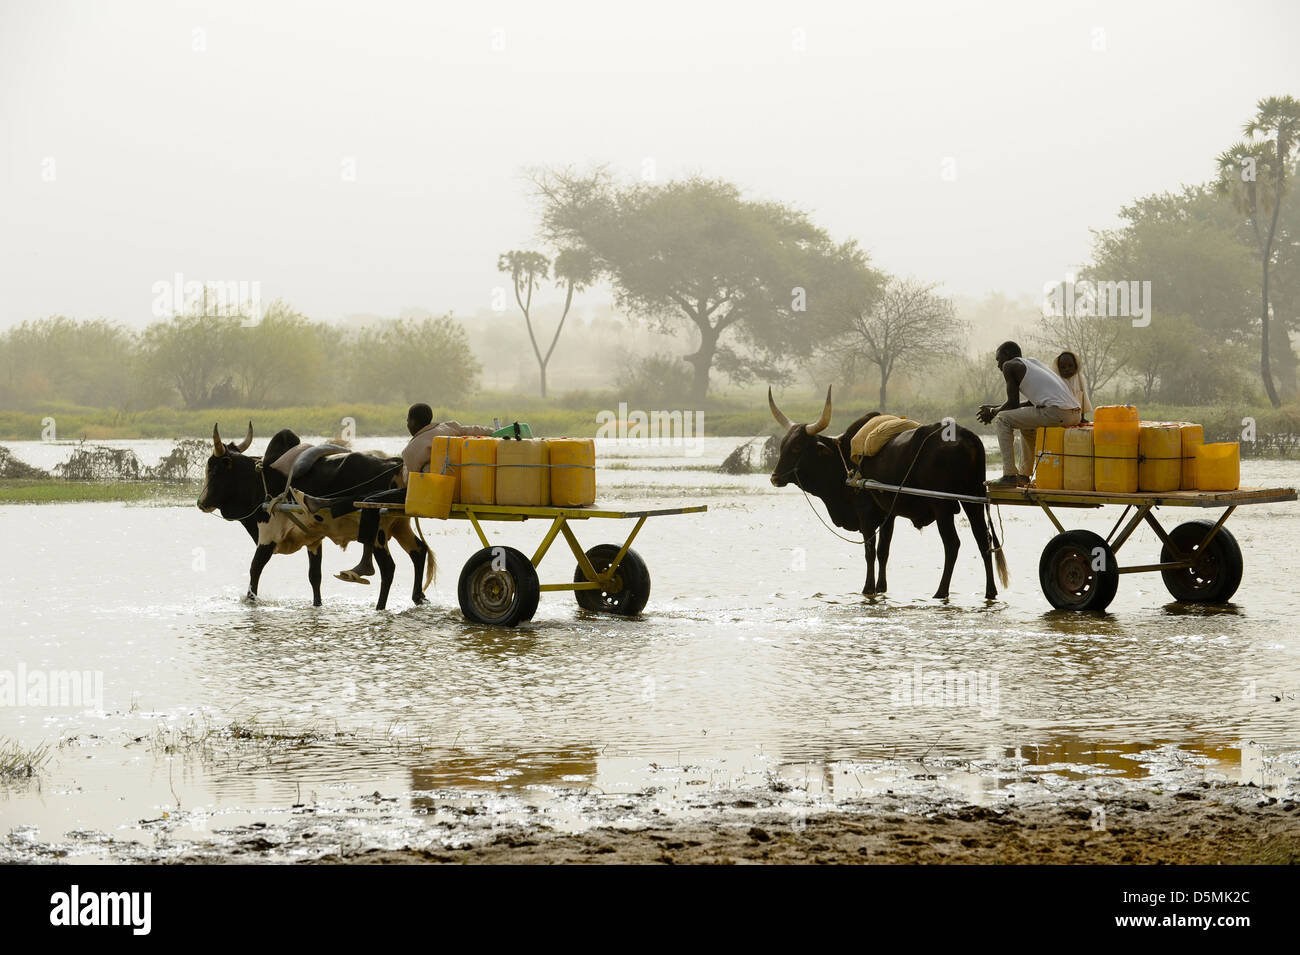 Afrika Niger Zinder, Dorf Zongon Soumaguela, Wasser Transport mit Ochsenkarren aus Wasser Teich während der trockenen Jahreszeit, ist das Wasser für die Bewässerung und Trinkwasserversorgung Stockfoto